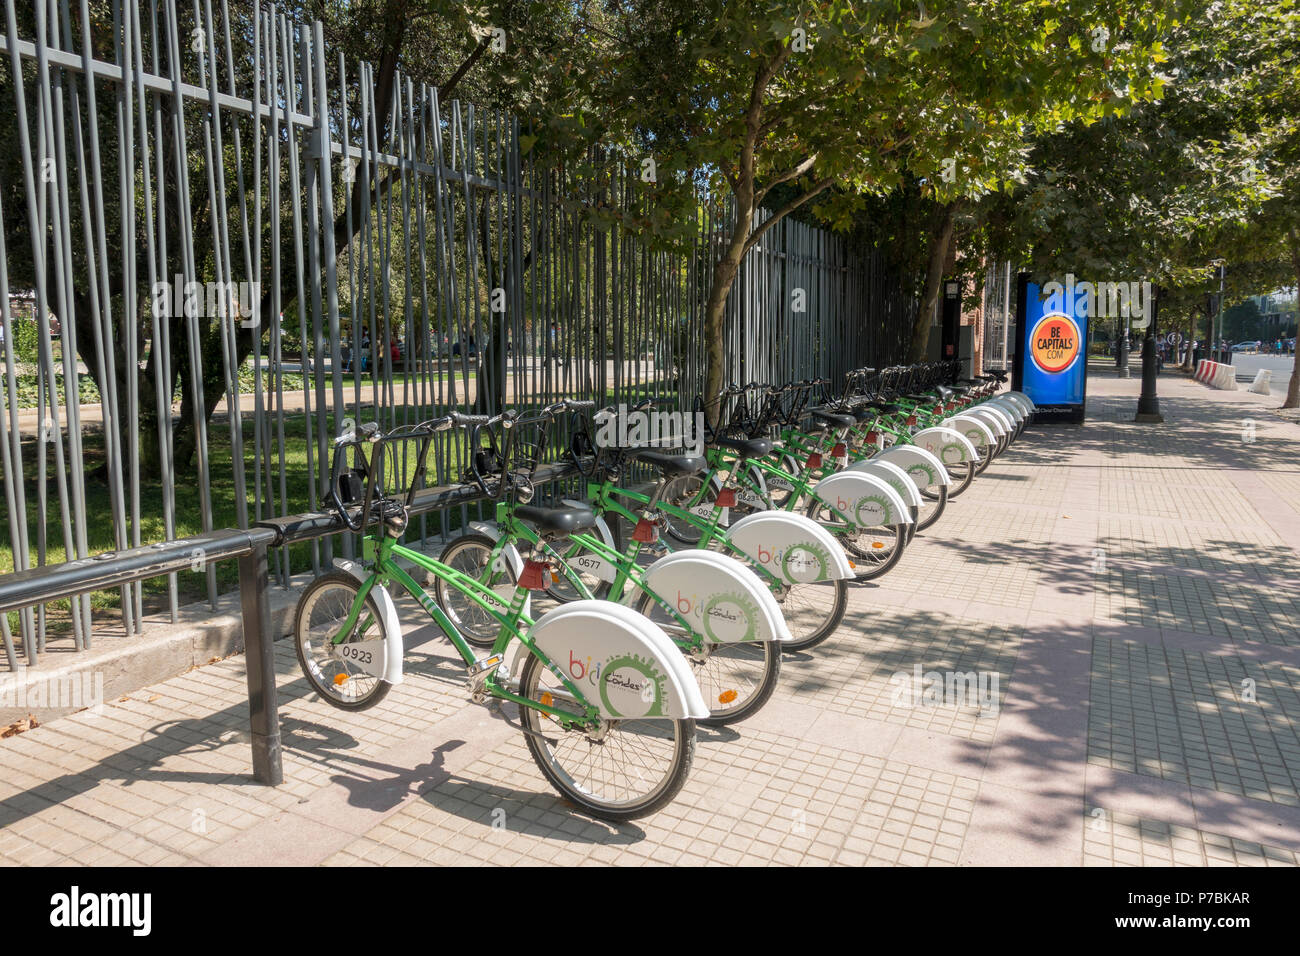 The Bici Las Condes bicycle rental plan at Parque Arauco, Las Condes, Santiago Stock Photo